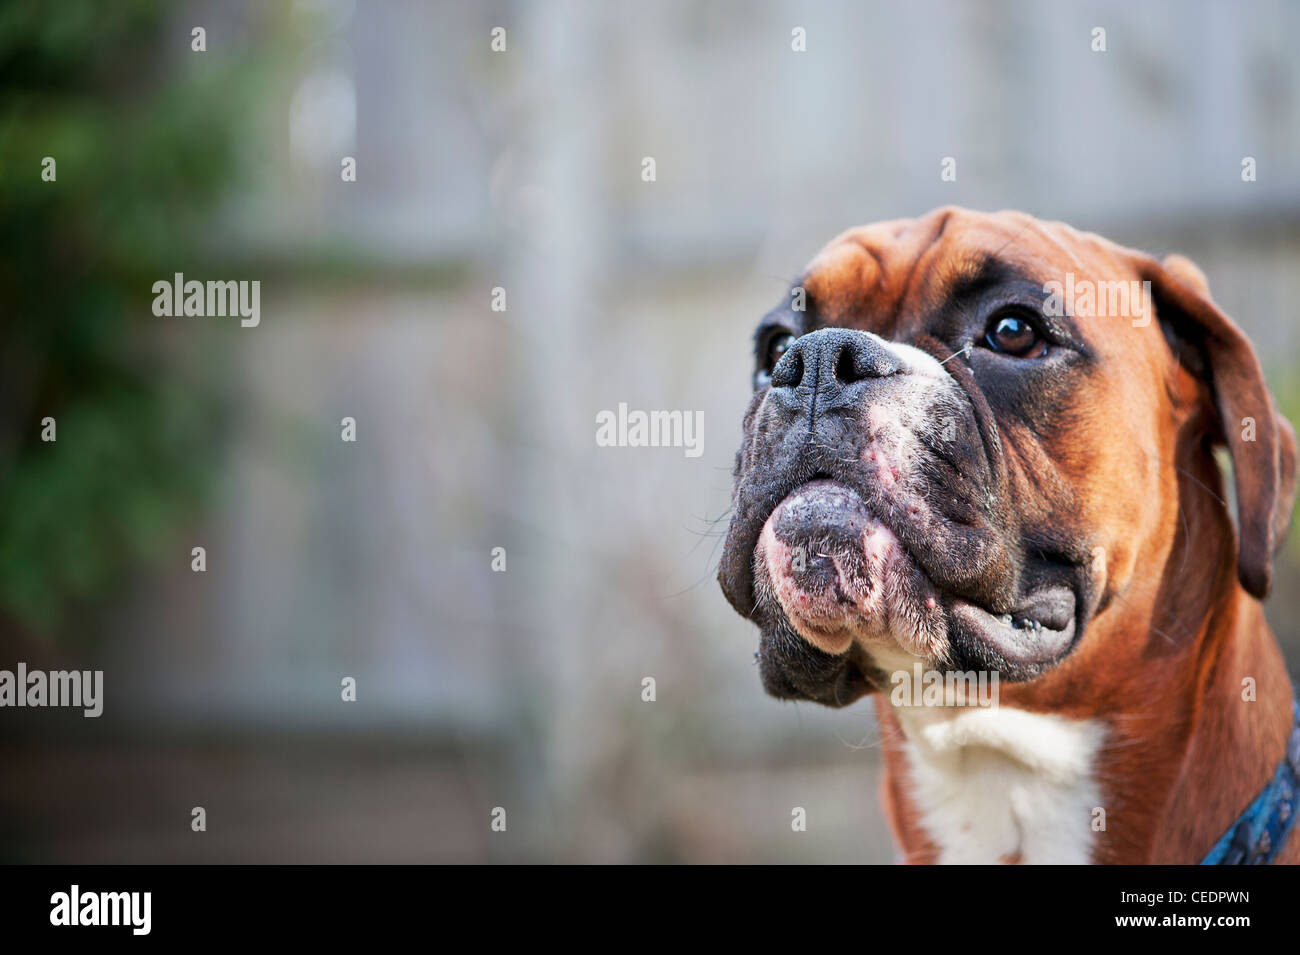 A Boxer dog's face Stock Photo